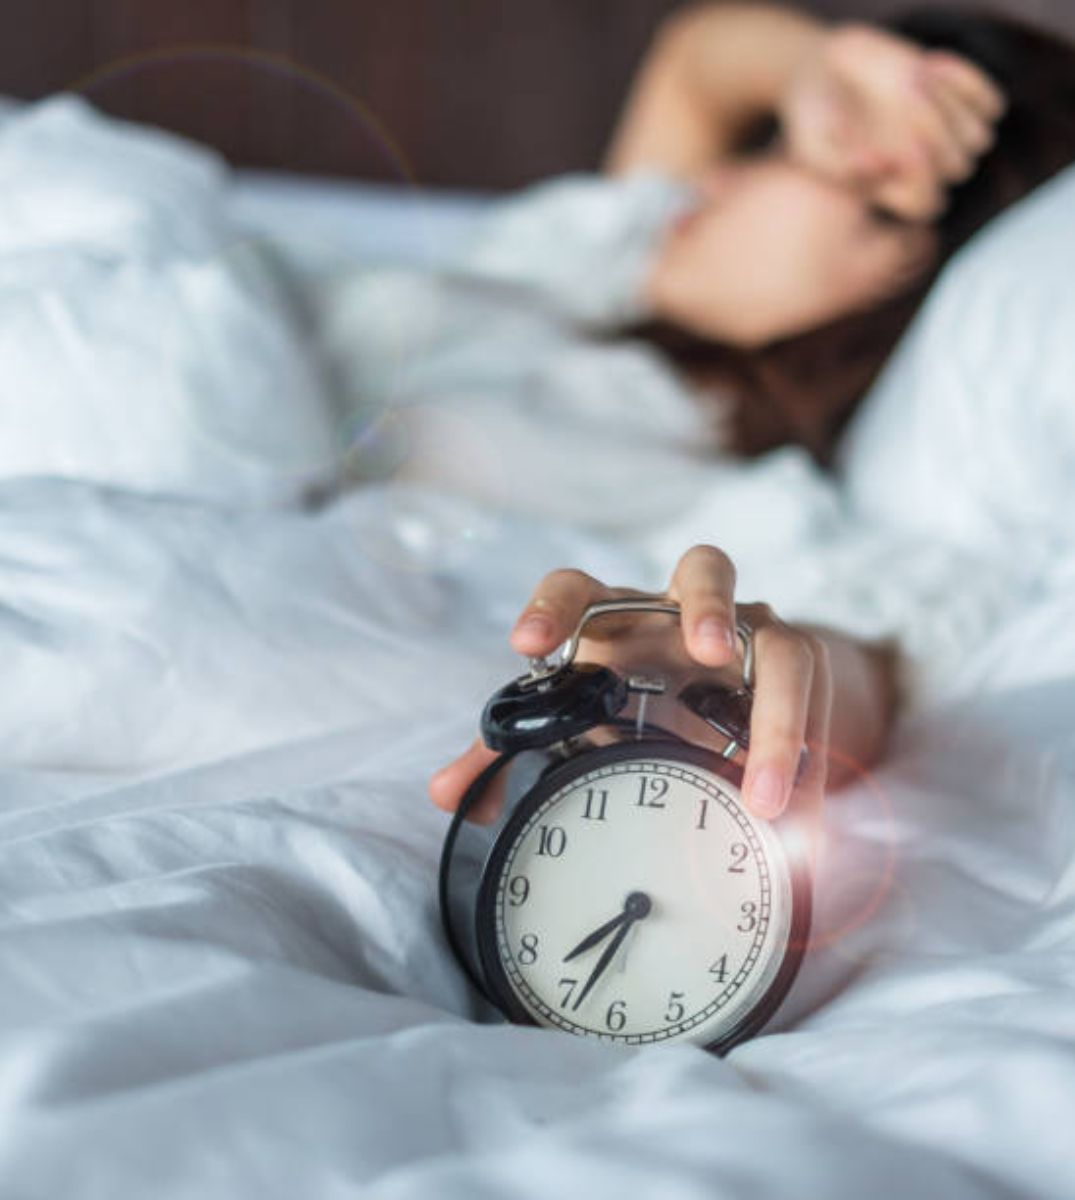 Frau im Bett schlägt den Schlummerknopf am Wecker, ein alltäglicher Moment des morgendlichen Aufwachens